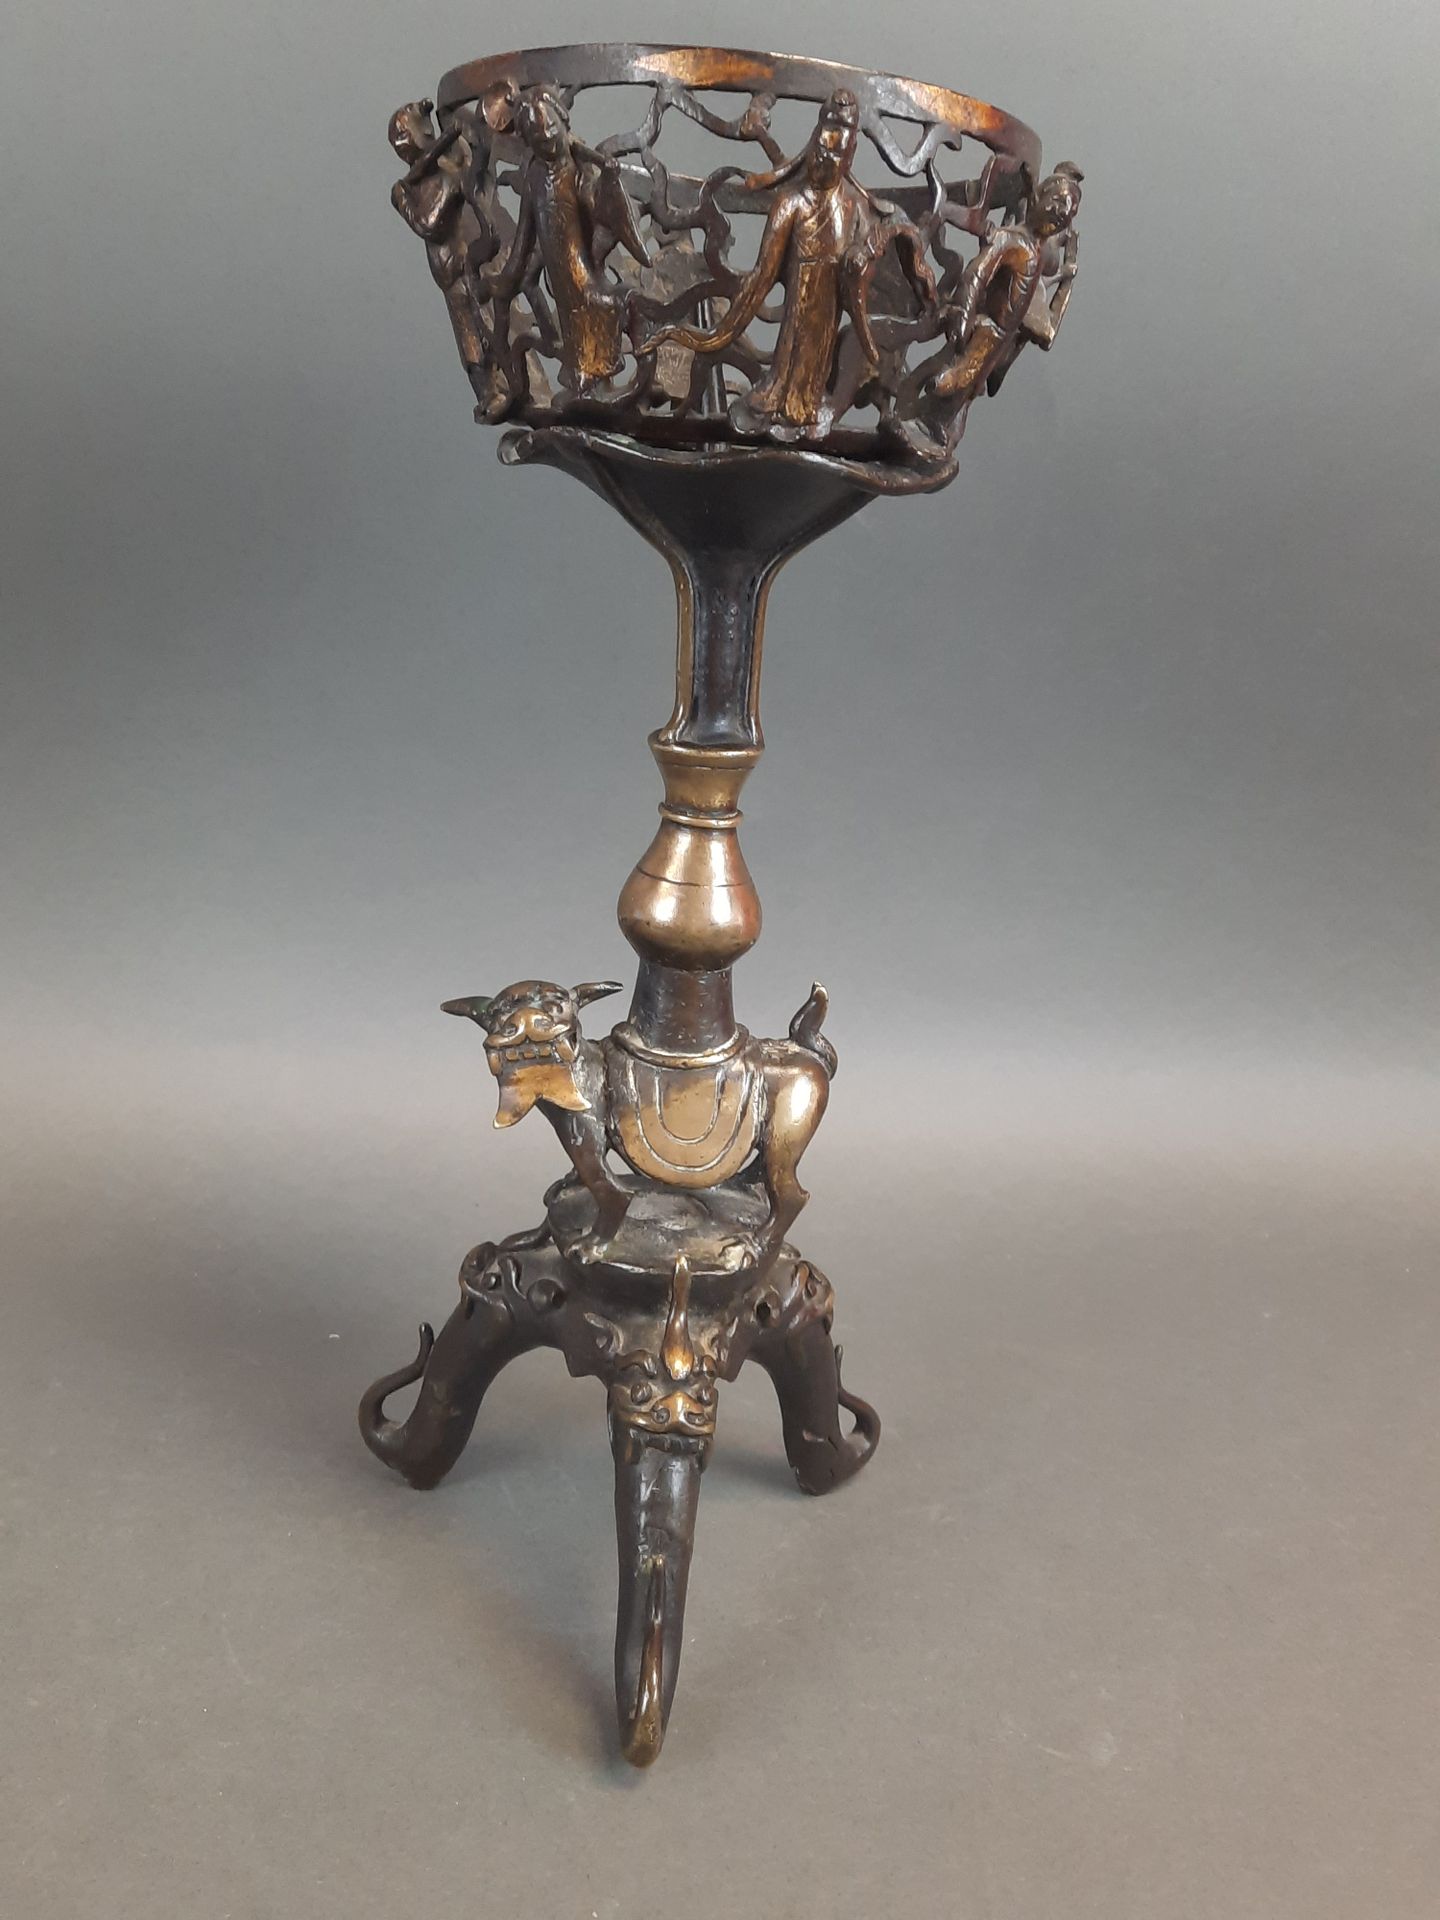 Null 中国。镂空的青铜烛台和它的灯芯，在三脚架的基础上有一个动物图案的轴。高：32.5厘米